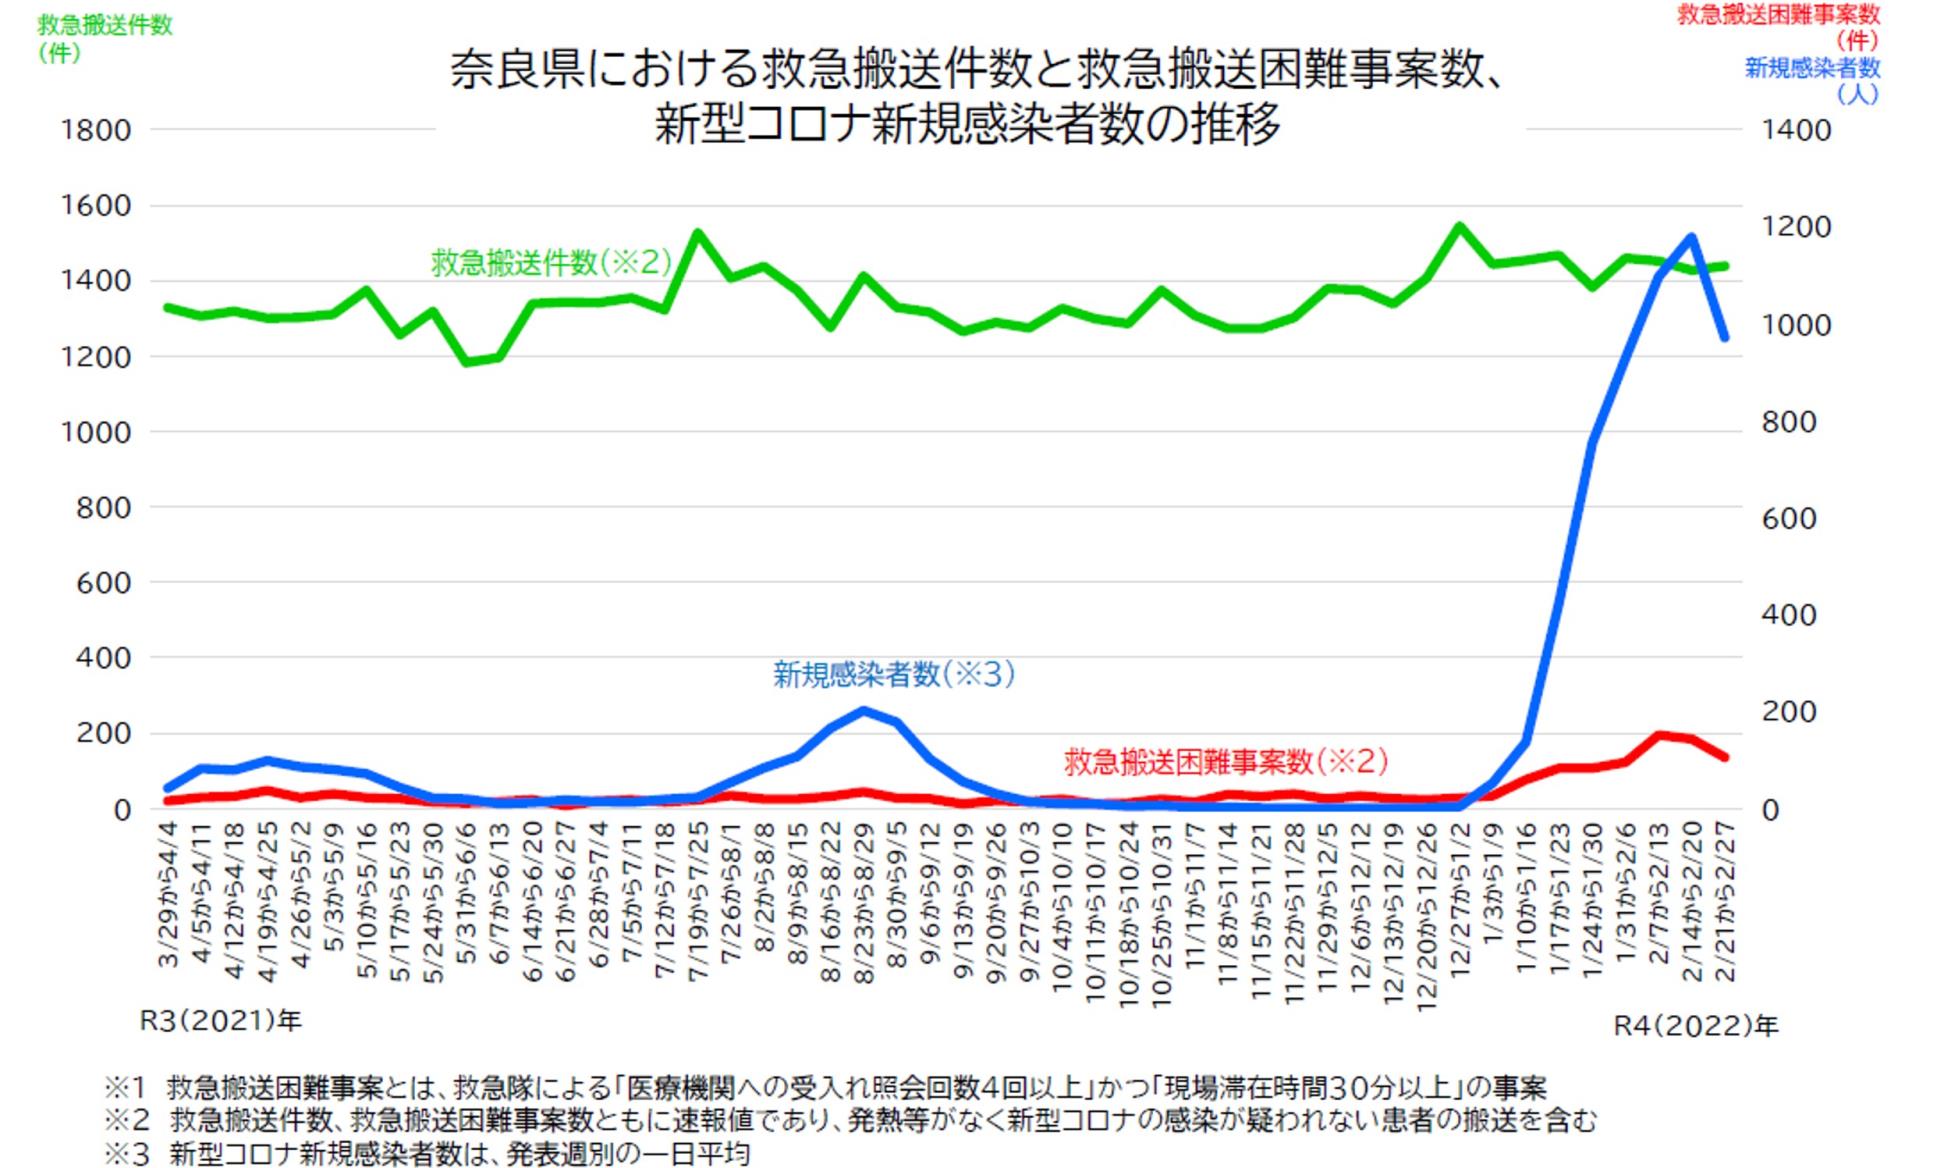 奈良県における救急搬送件数と救急搬送困難事案数、新型コロナ新規感染者数の推移